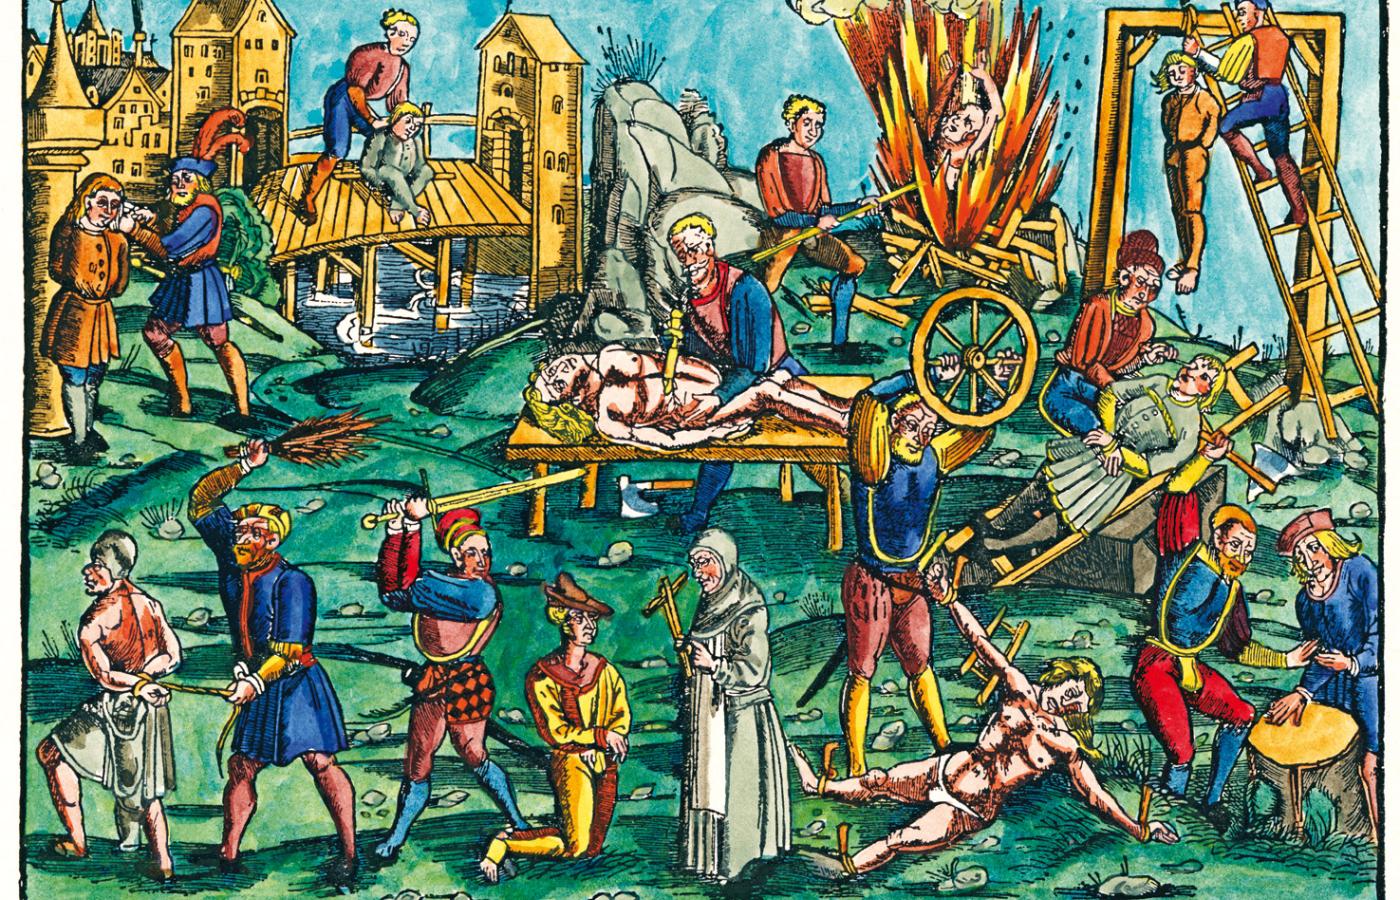 Rodzaje kaźni w średniowieczu. Kolorowy drzeworyt niemiecki z 1512 r.